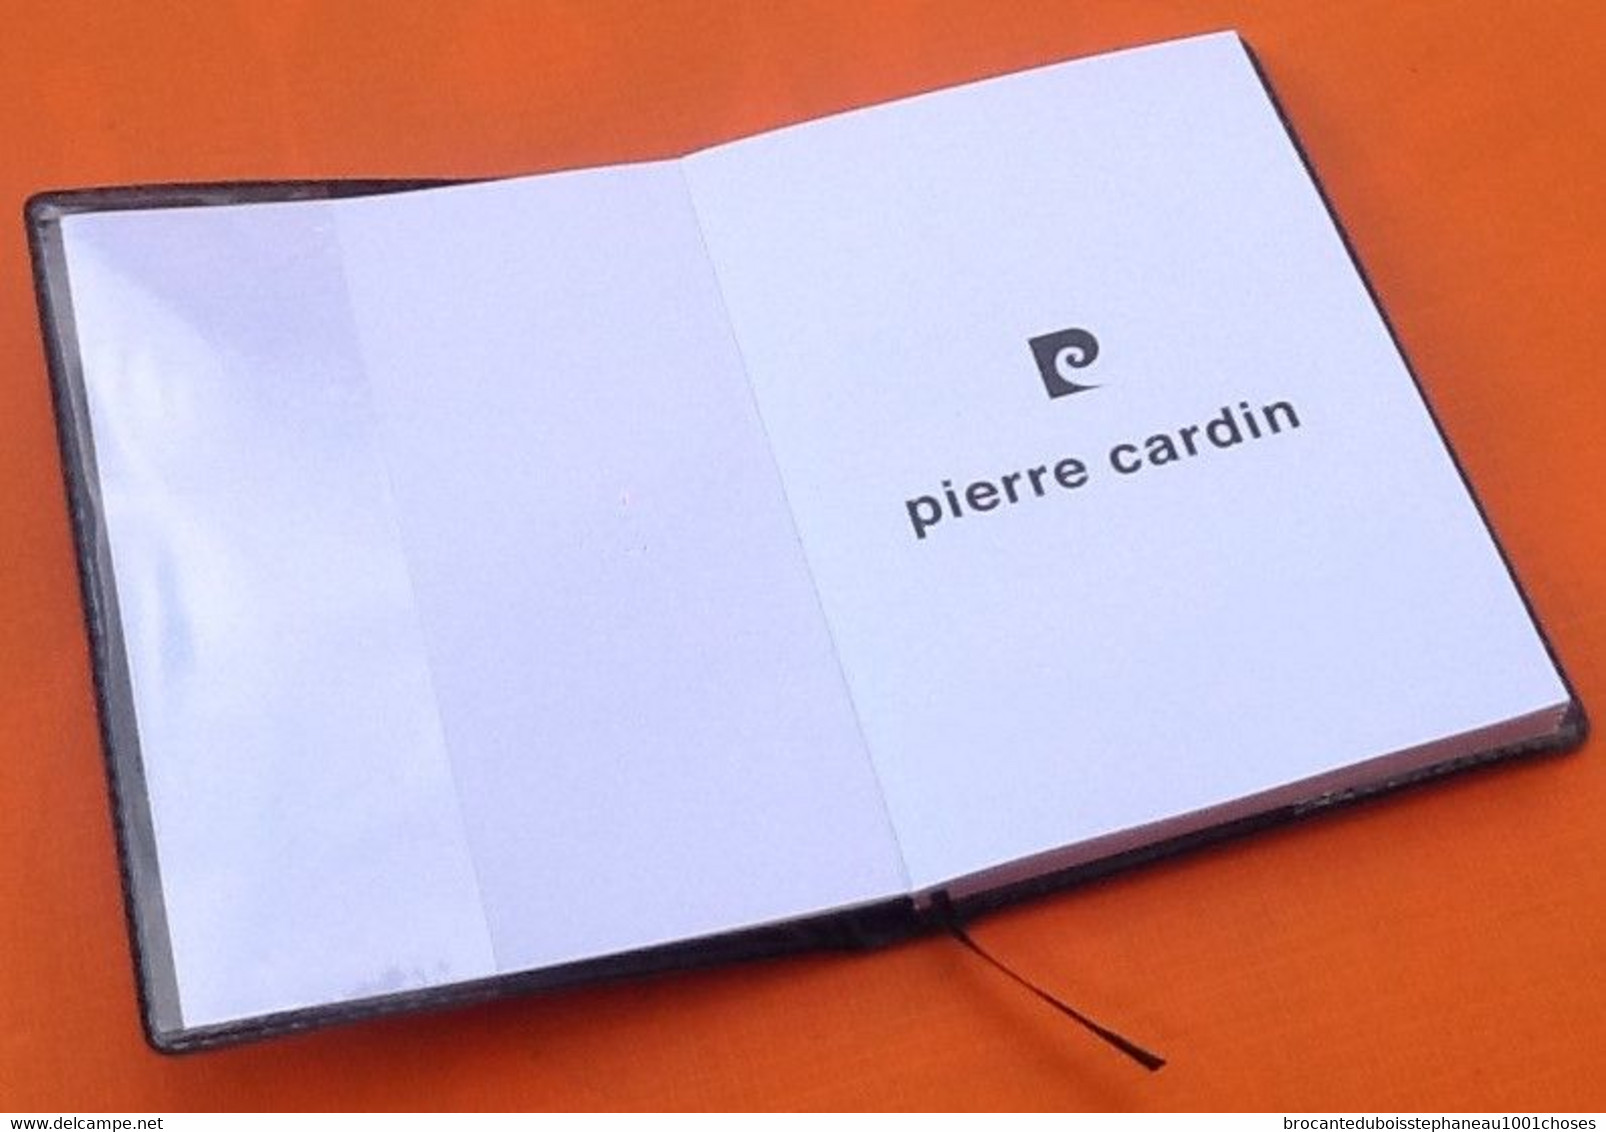 Coffret Pierre Cardin Une signature de Prestige Petit répertoire  alphabétique / bloc note Coloris rouge carmin